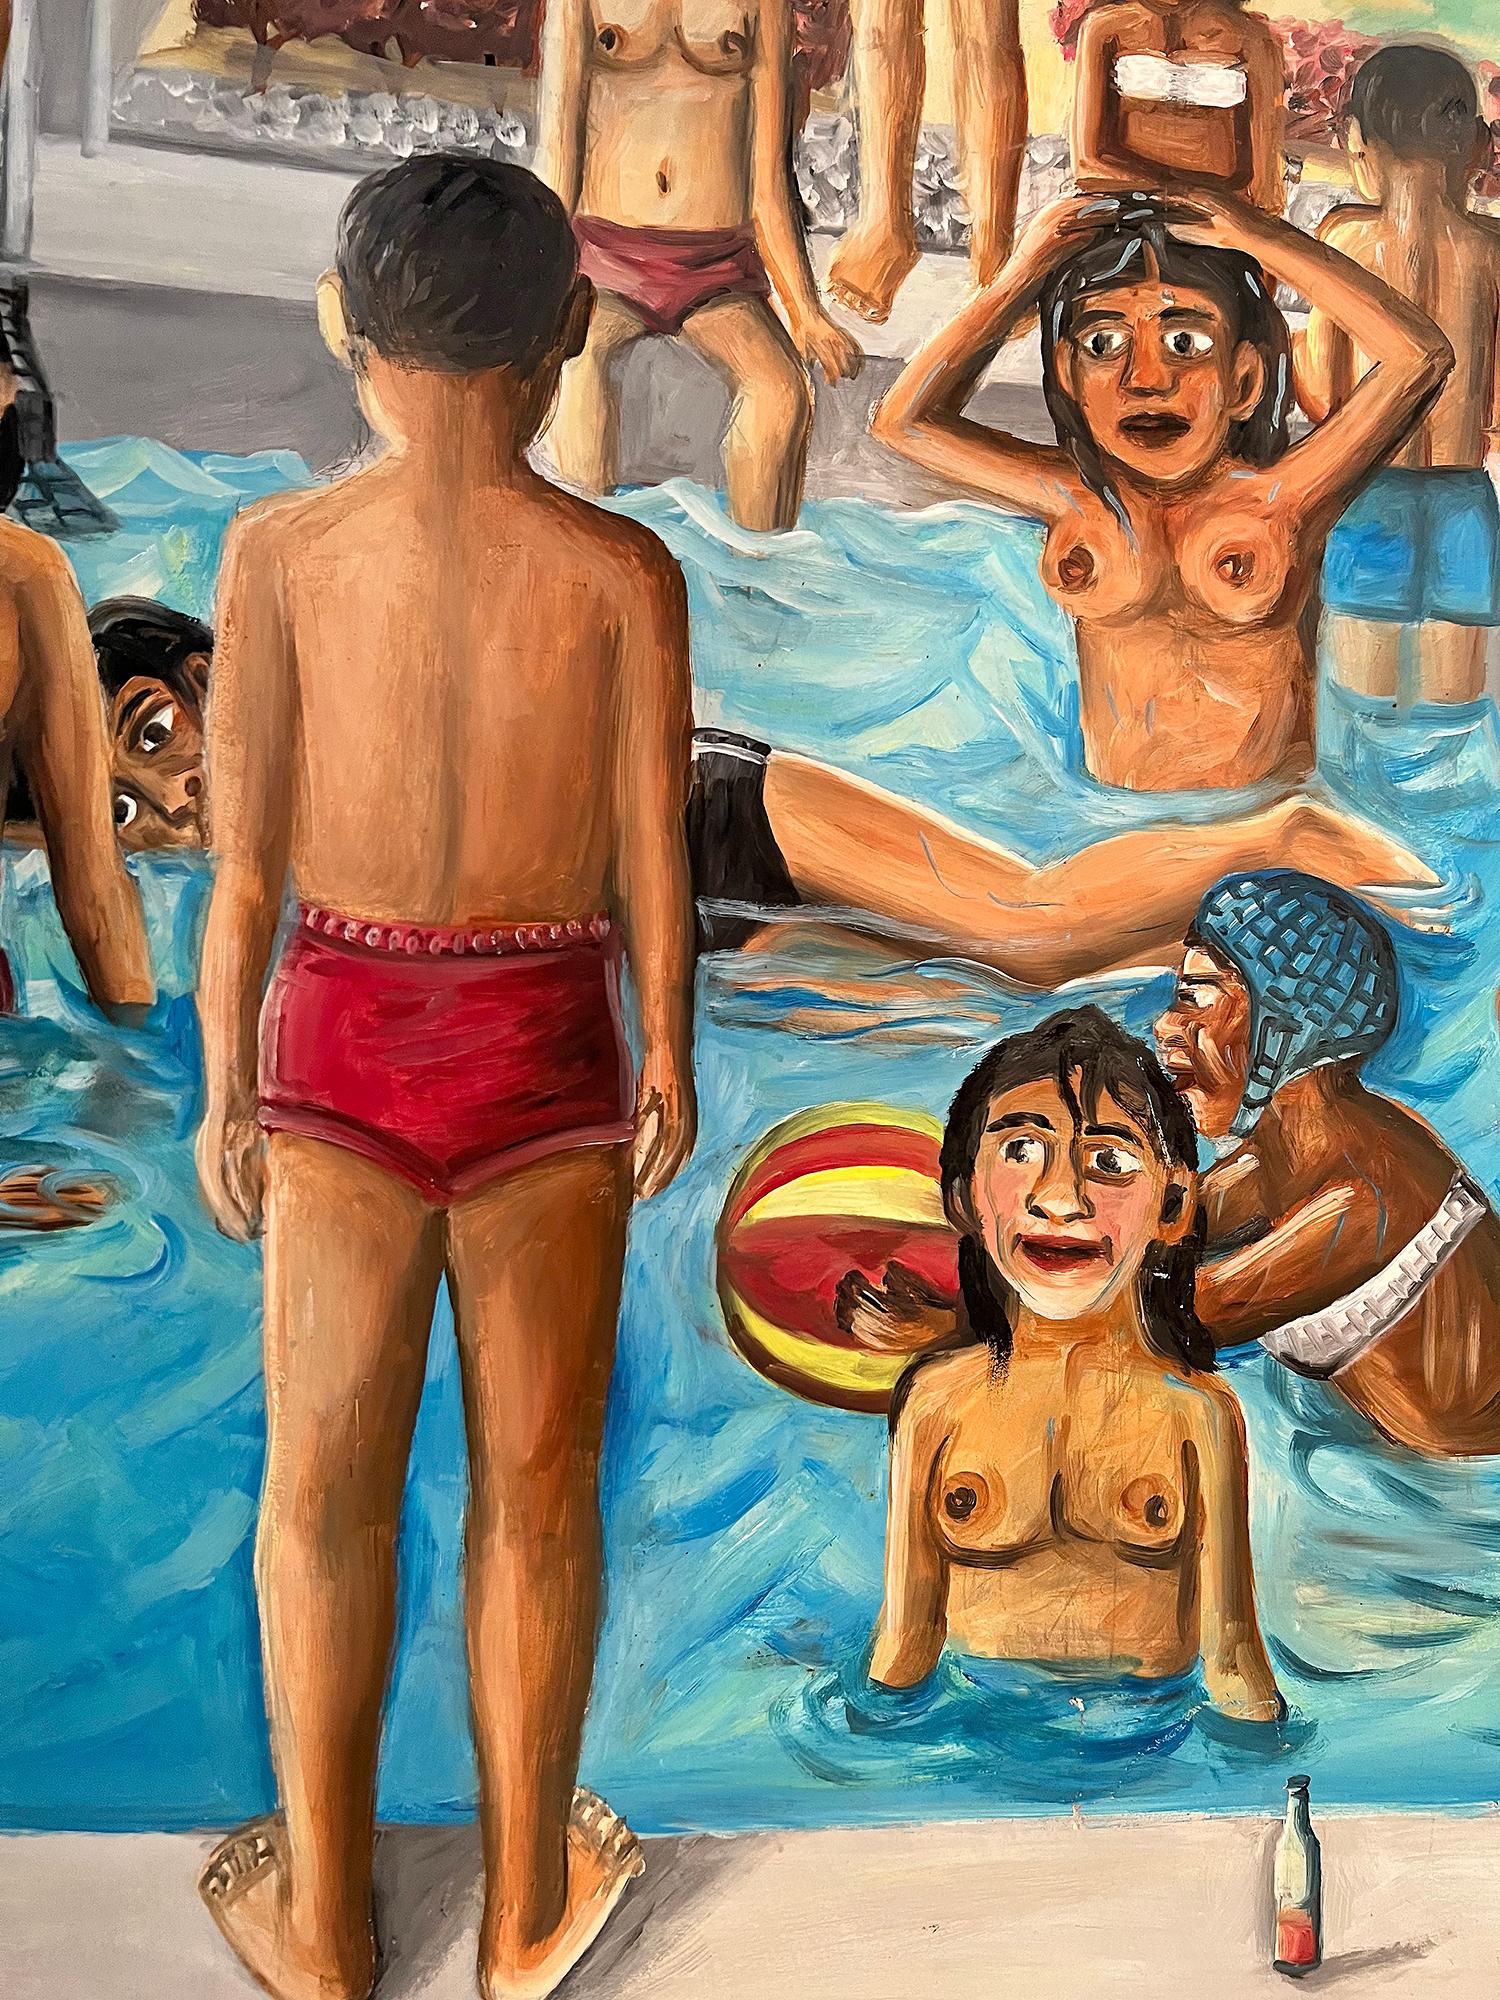 Ein junger Mann erregt in einem überfüllten haitianischen Schwimmbad der Oberschicht Aufmerksamkeit. Wir sehen ihn nur von hinten in einer Magritte-ähnlichen Pose. Die verblüfften Blicke einiger der nackten, barbusigen Badeschönheiten und eines